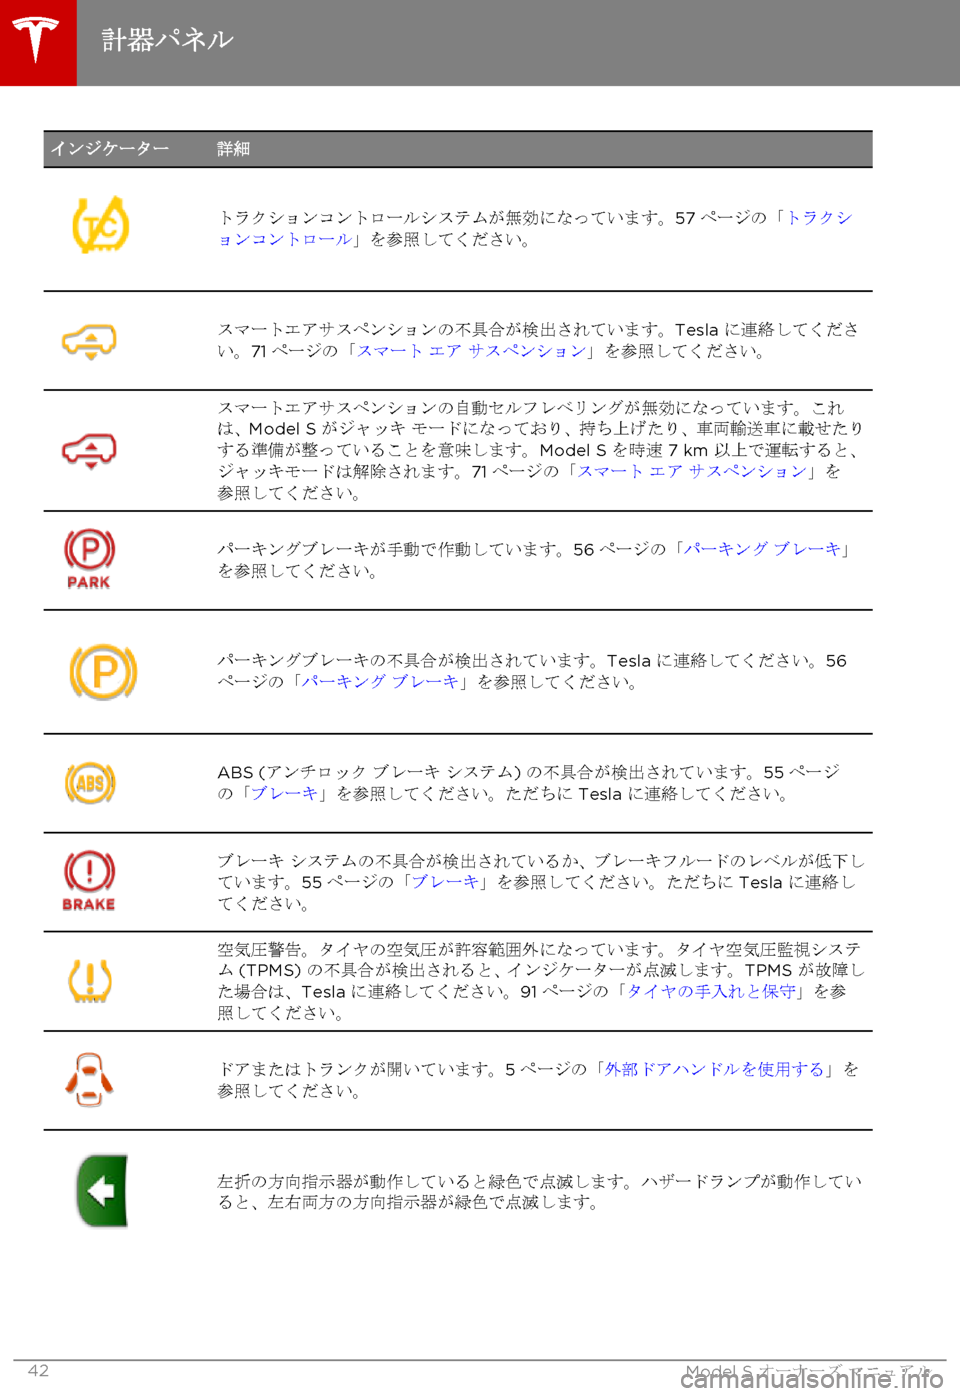 TESLA MODEL S 2015  取扱説明書 (in Japanese)  インジケーター詳細
トラクションコントロールシステムが無効になっています。57ページの「トラクションコントロール」を参照してください。
ス�